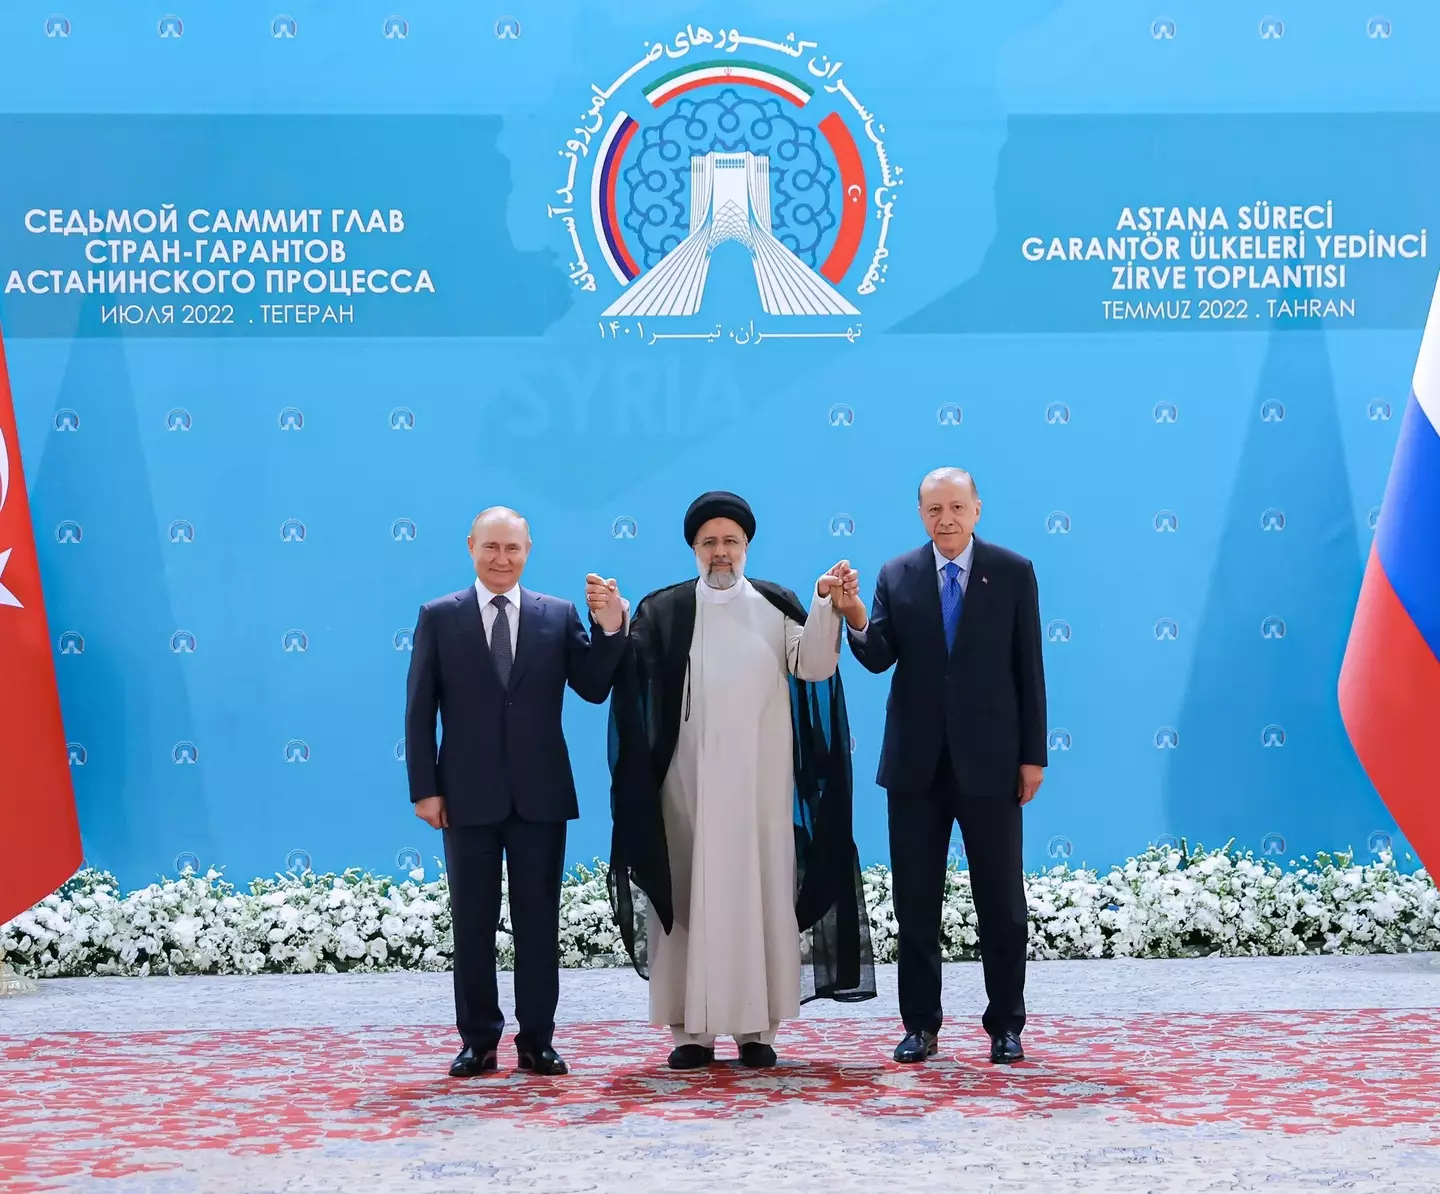 The leaders have met in Tehran.